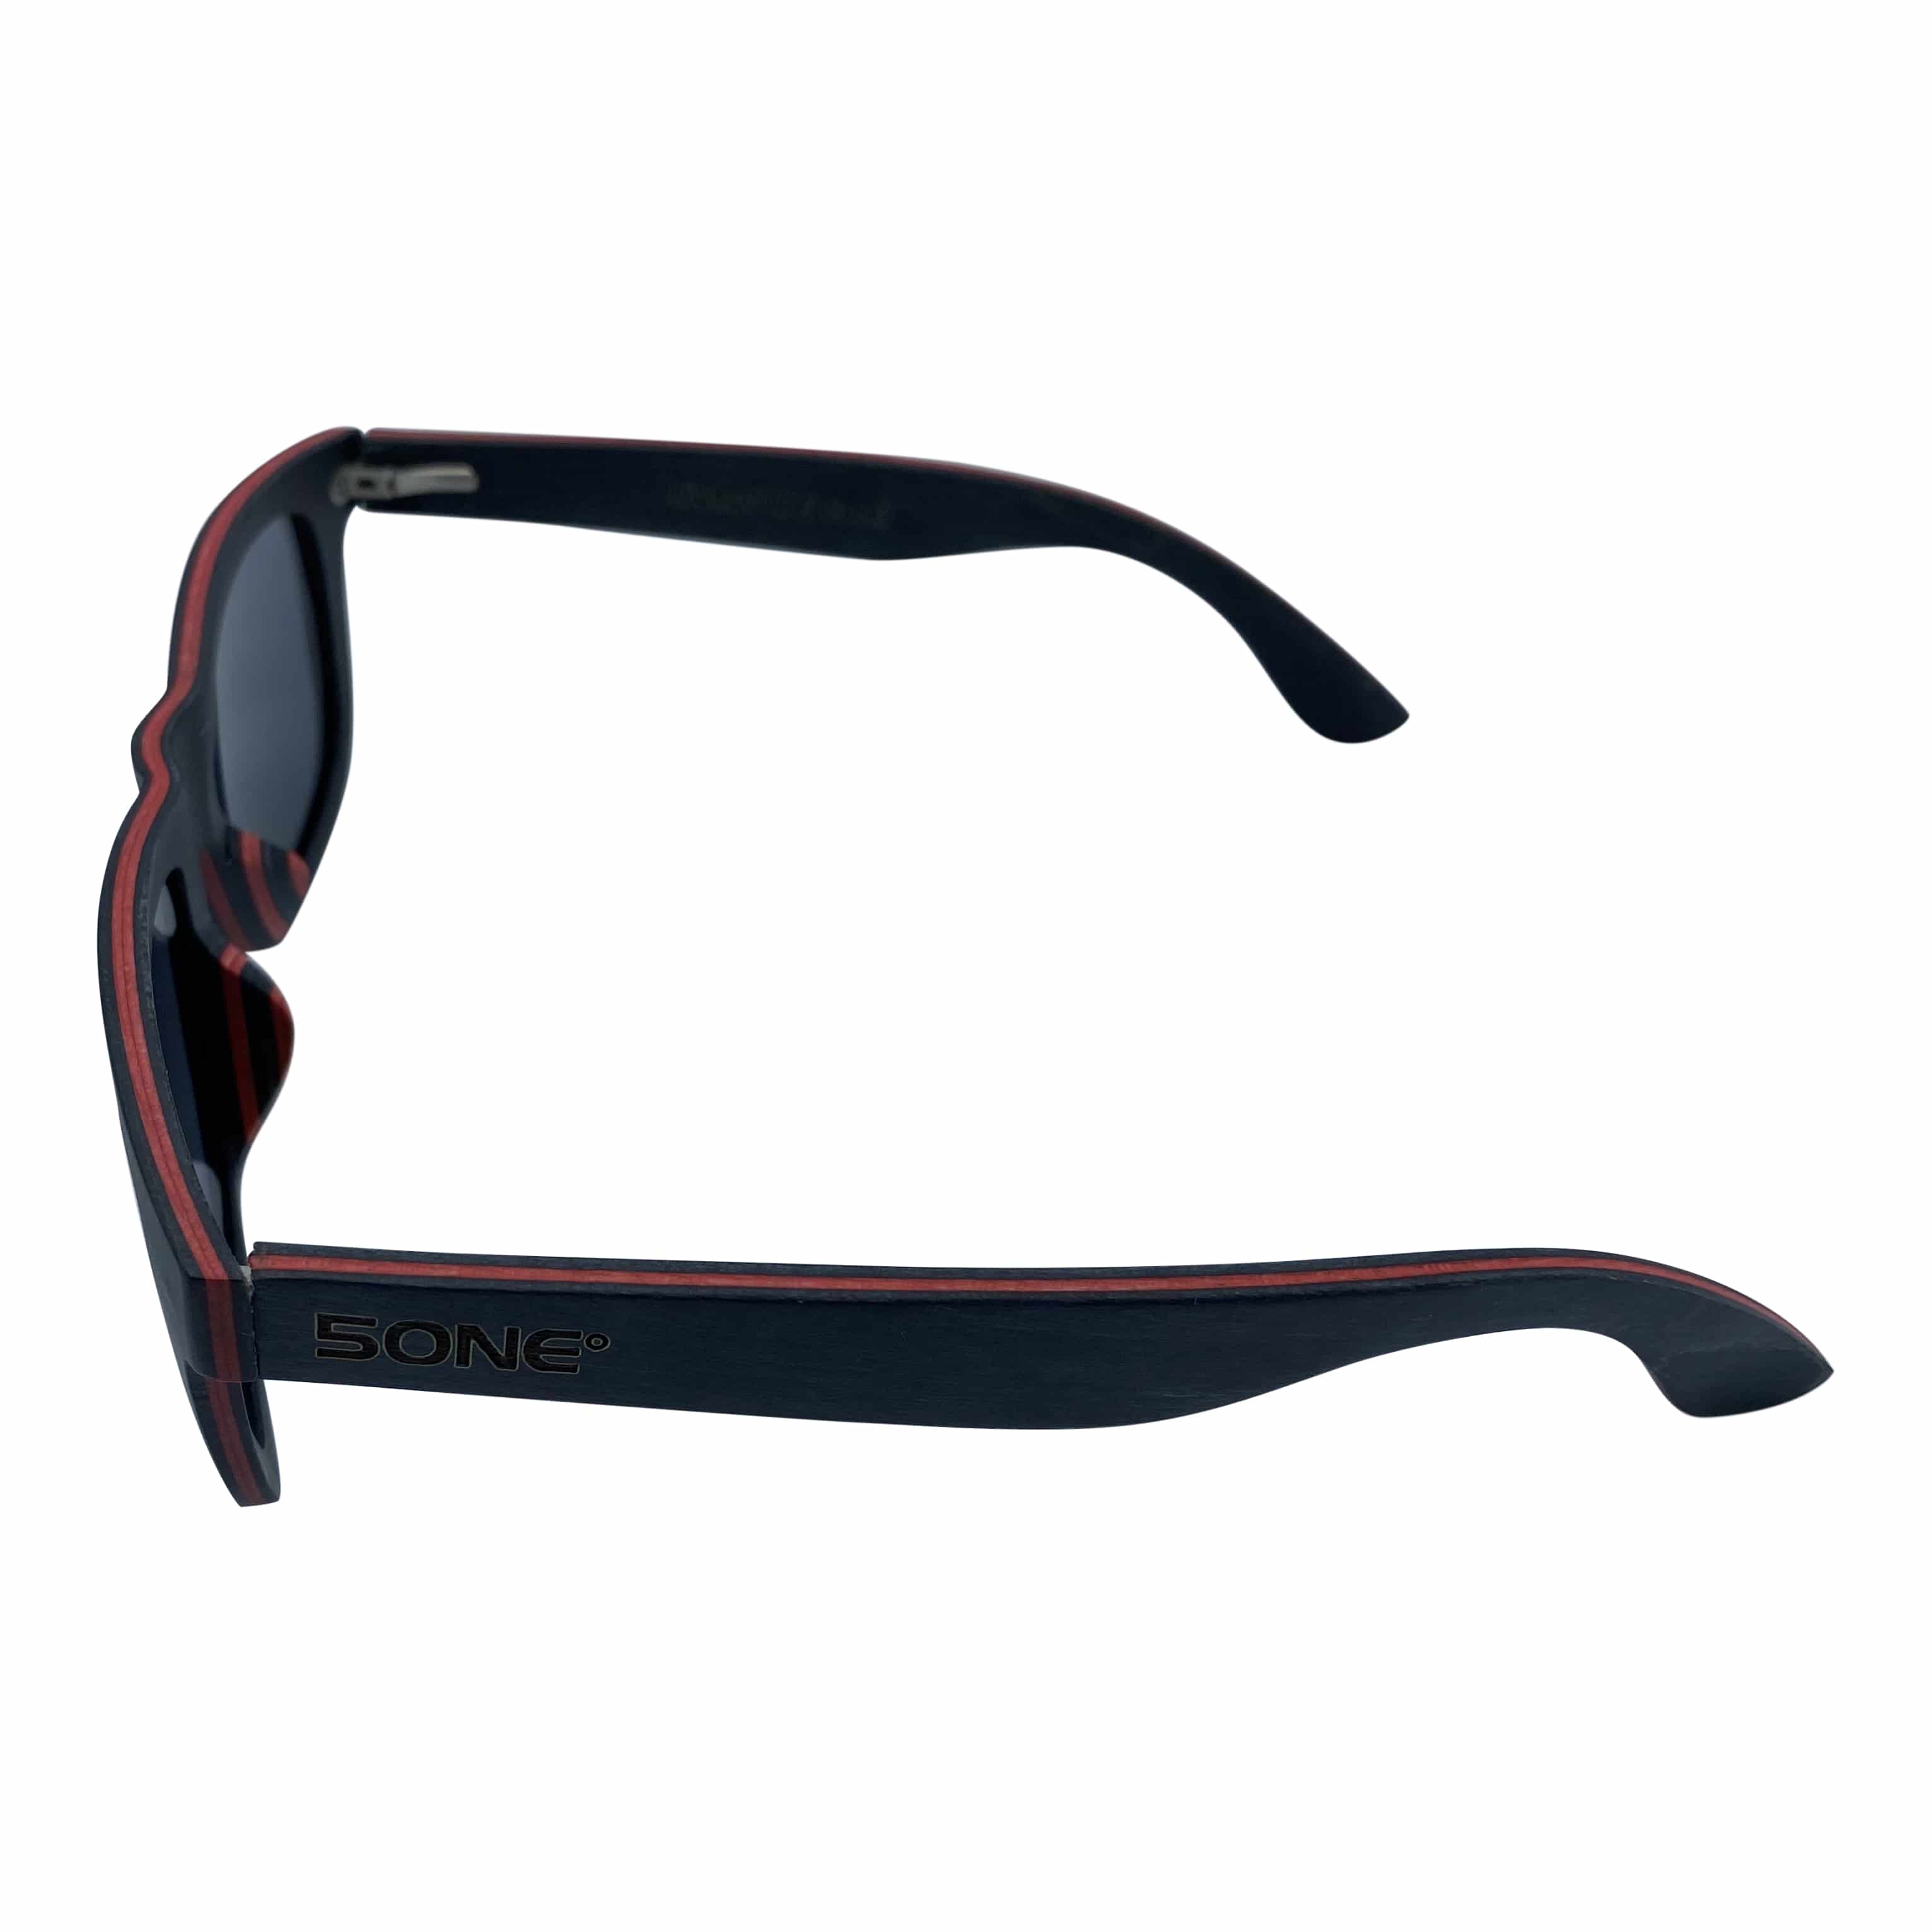 5one® Black/Red 2.0 - Houten Zonnebril met gepolariseerde grijze lens